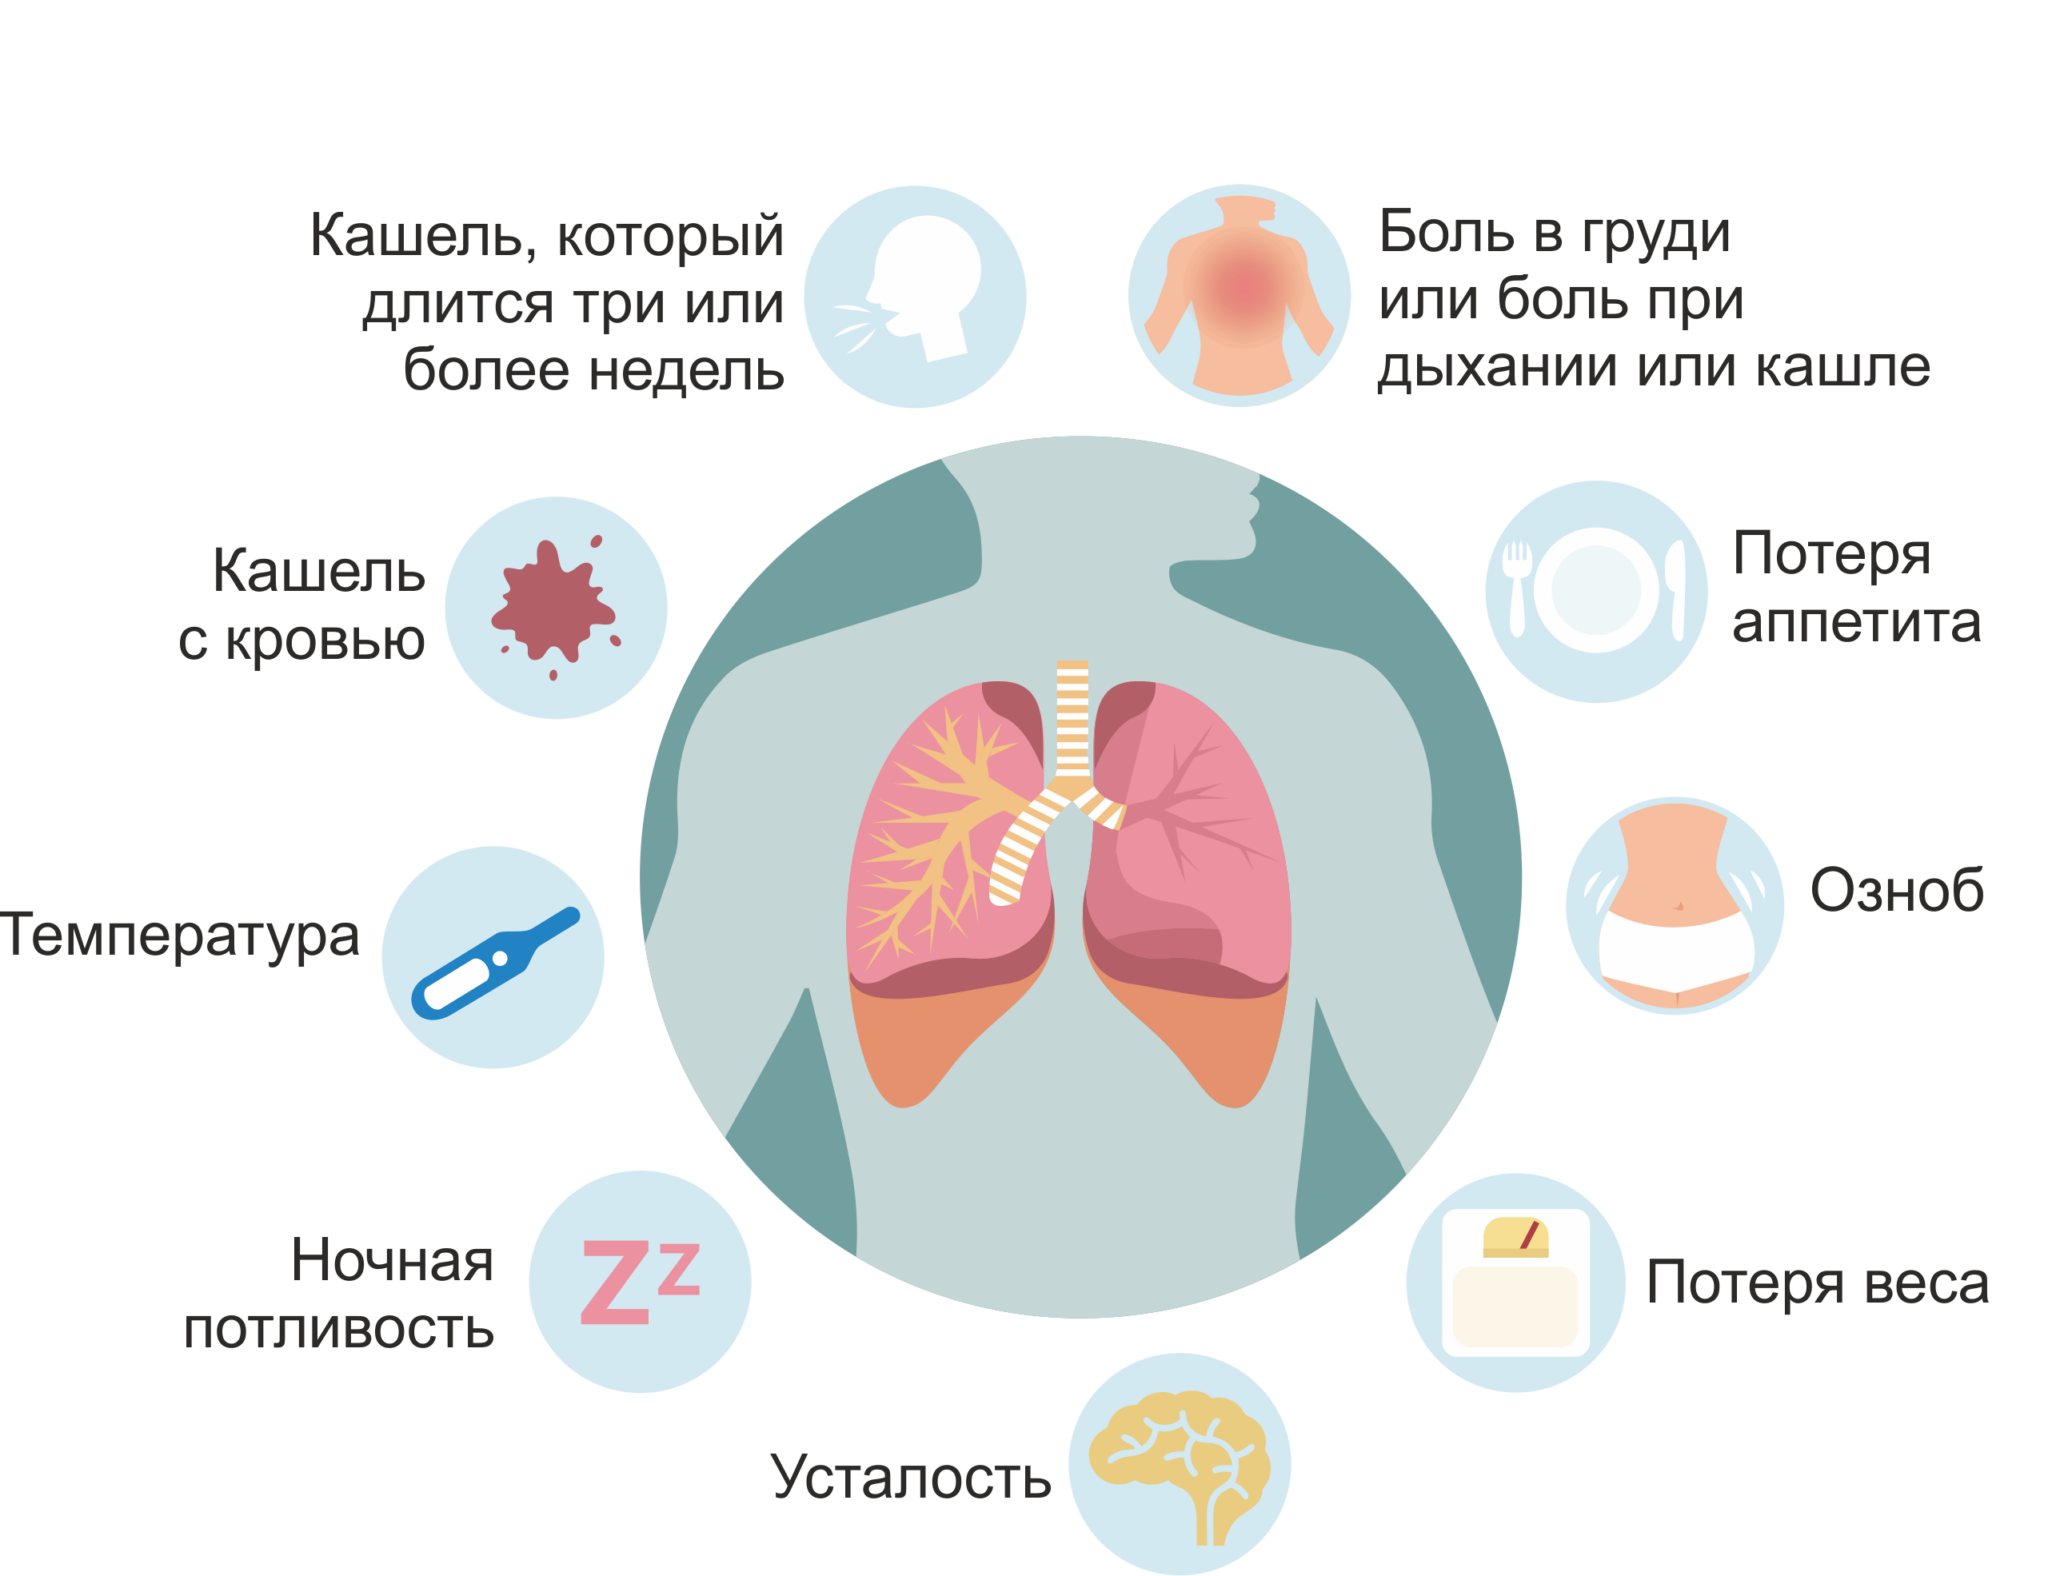 Признаки воздуха в легких. Основные ранние симптомы туберкулеза легких. Первичный туберкулез симптомы. Симптомы проявления туберкулеза.